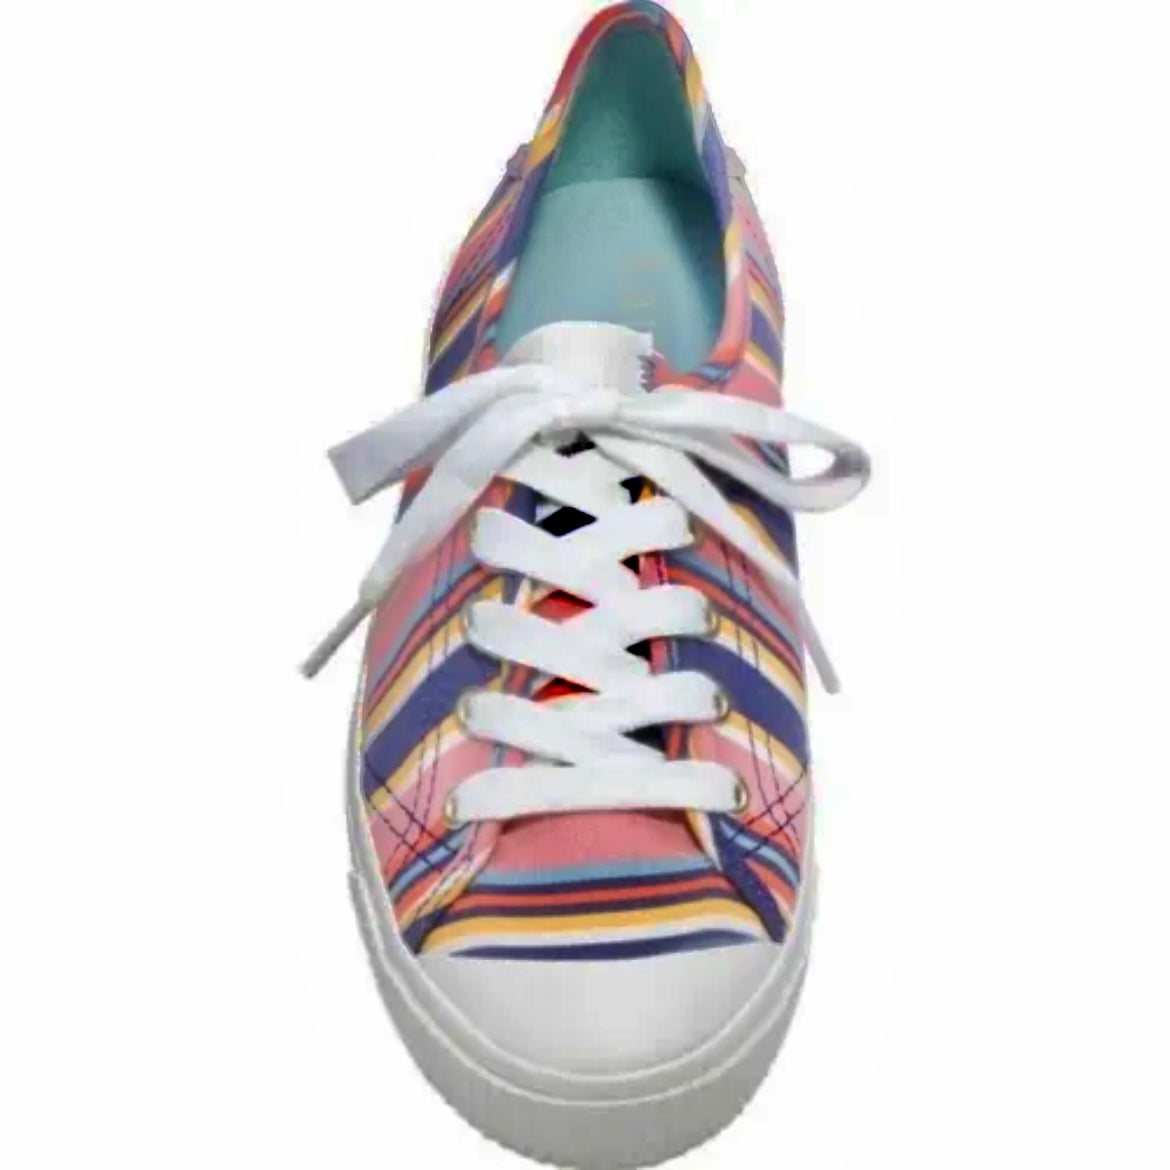 TENNISON Sidewalk Stripe Multicolor Lace Up Size 9.5B Women's Sneakers